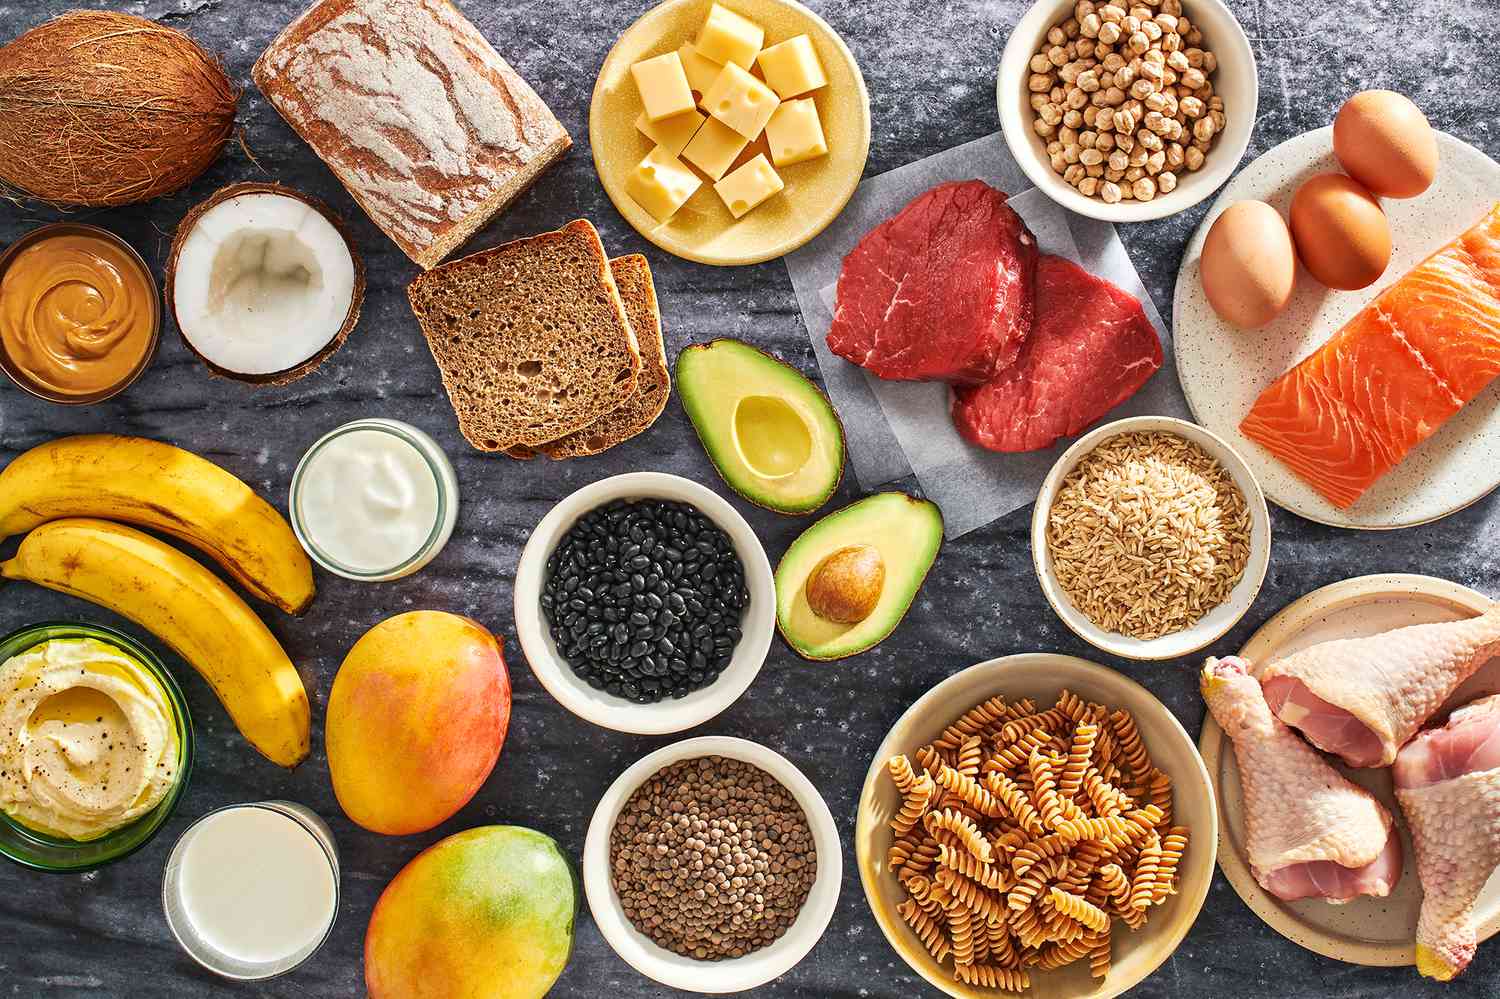 Fotos de alimentos de aumento de peso saludables como pan, queso, aguacate, pasta, etc.